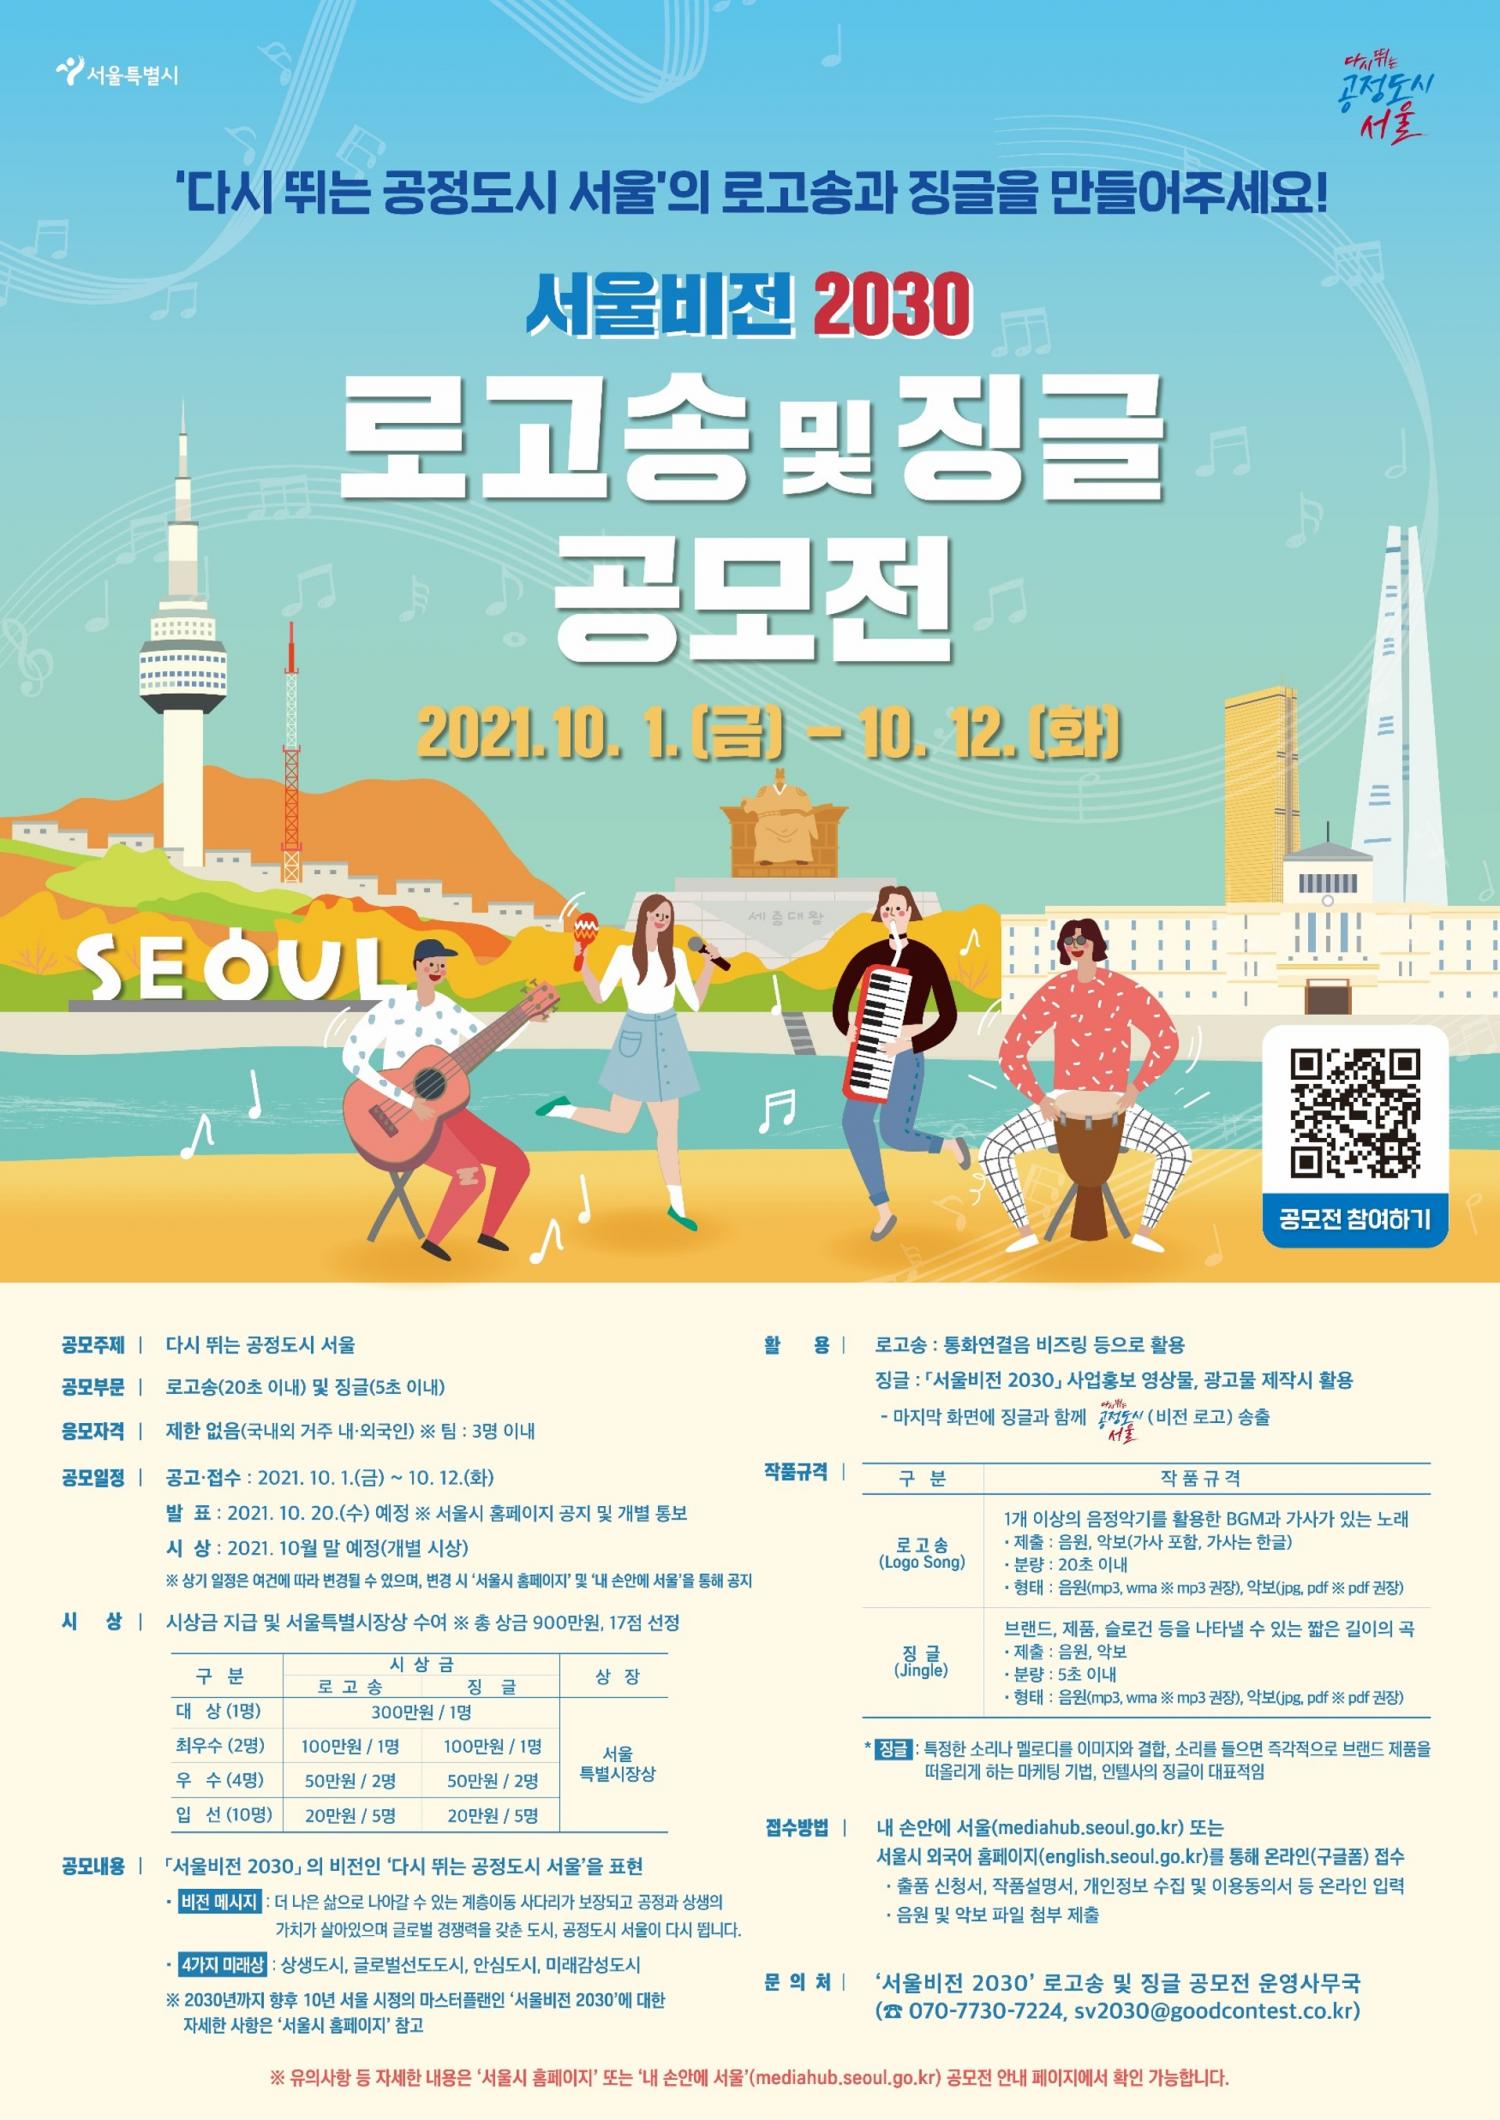 붙임2. 서울비전2030 로고송 및 징글 공모전 포스터.jpg